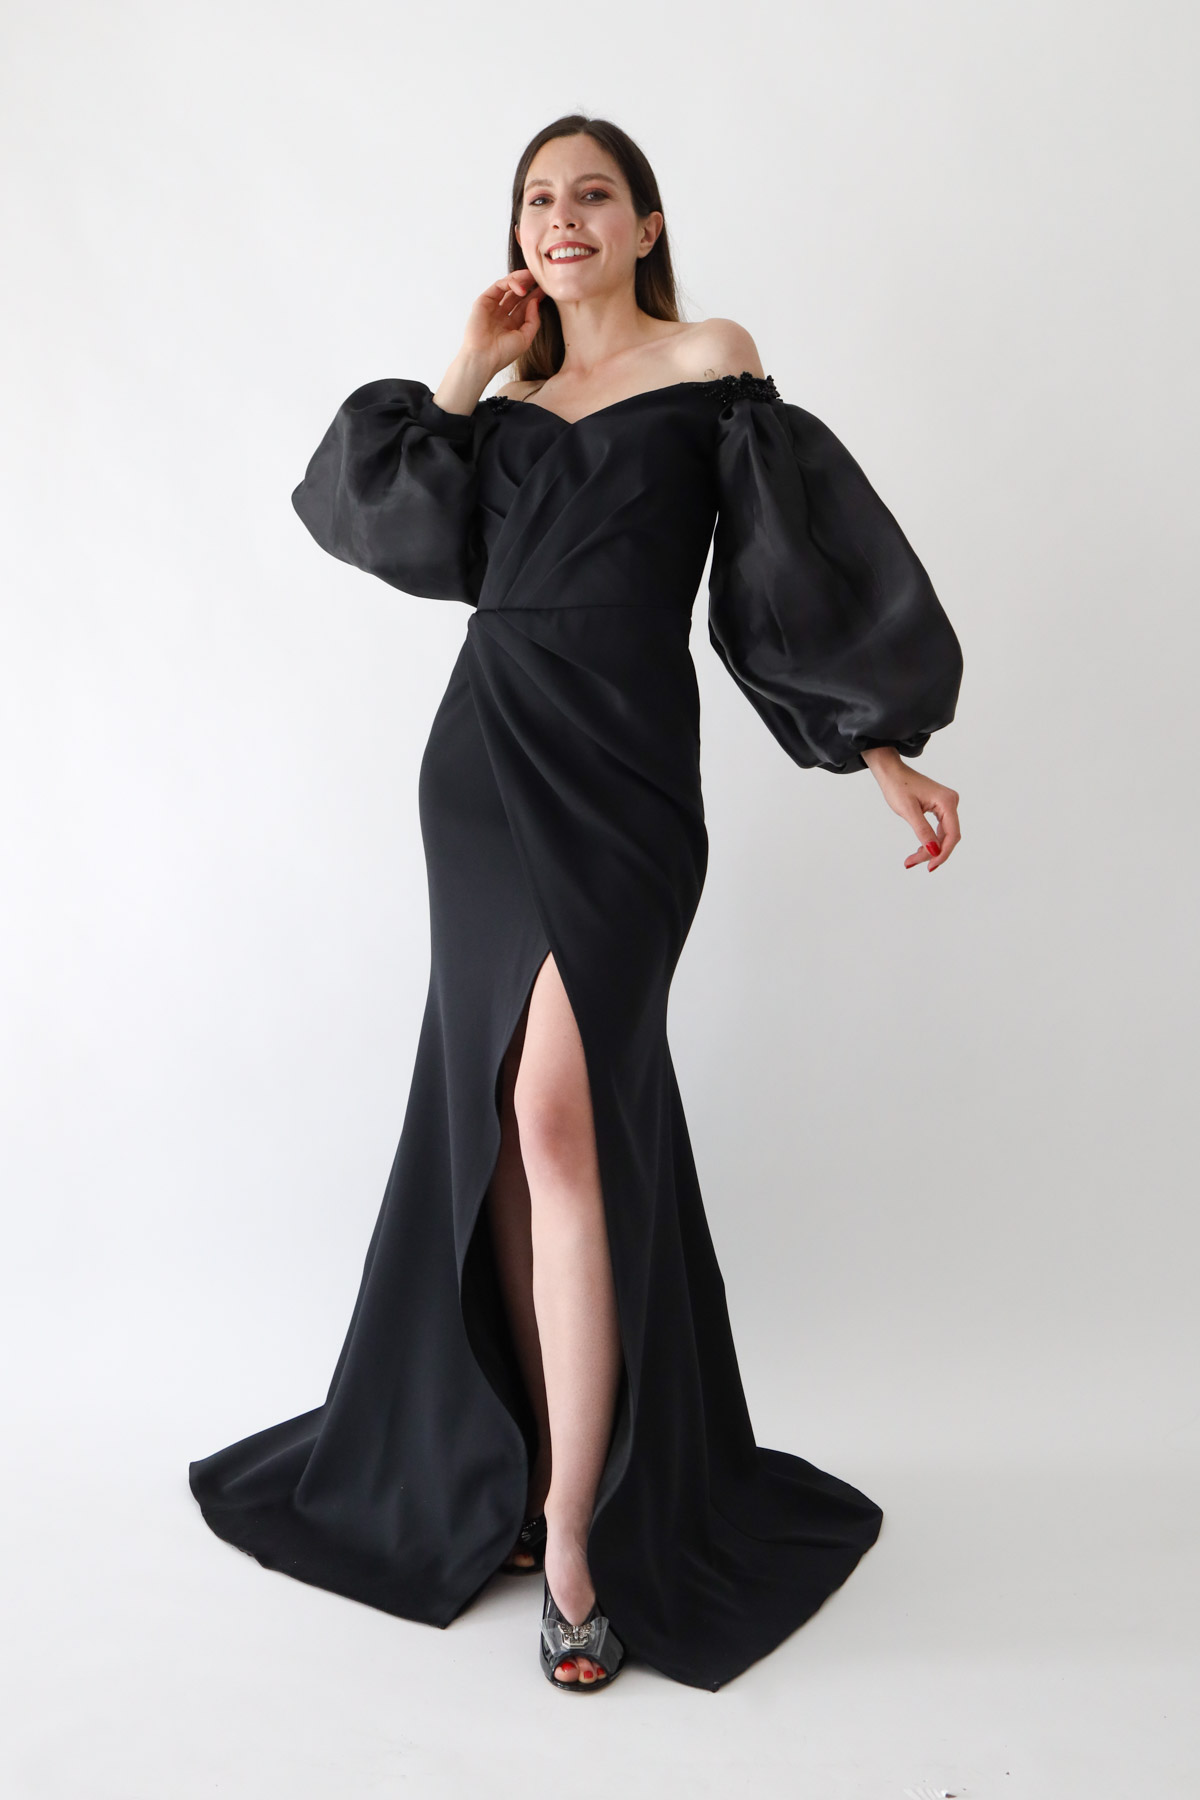 Kadın Abiye Elbise Modelleri | BUTİK SUAT